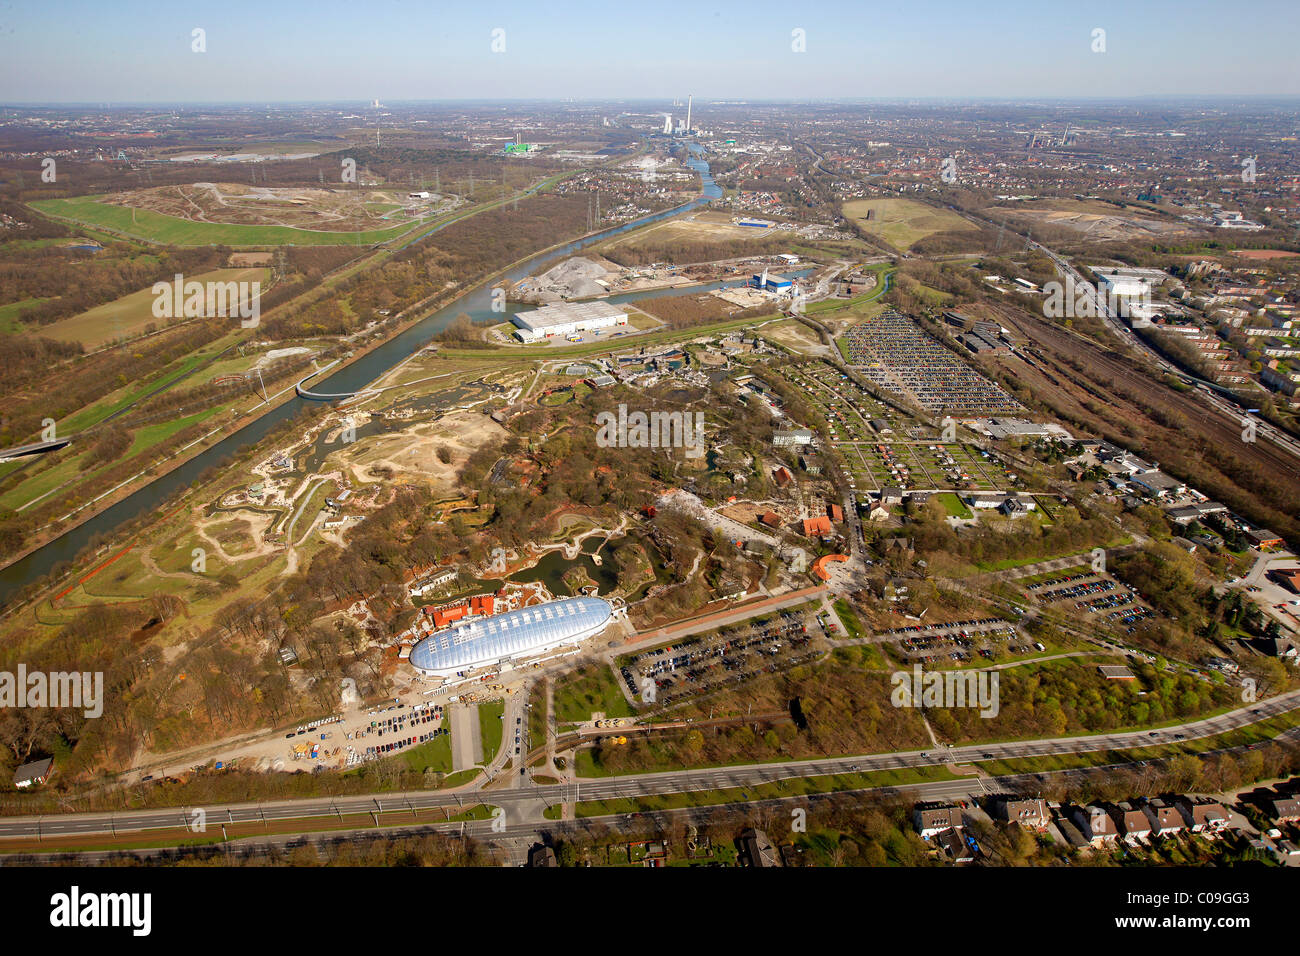 Vista aerea, zoo, Zoom animale Erlebniswelt theme park, Holderlinstrasse 72, Gelsenkirchen, Ruhrgebiet regione Foto Stock